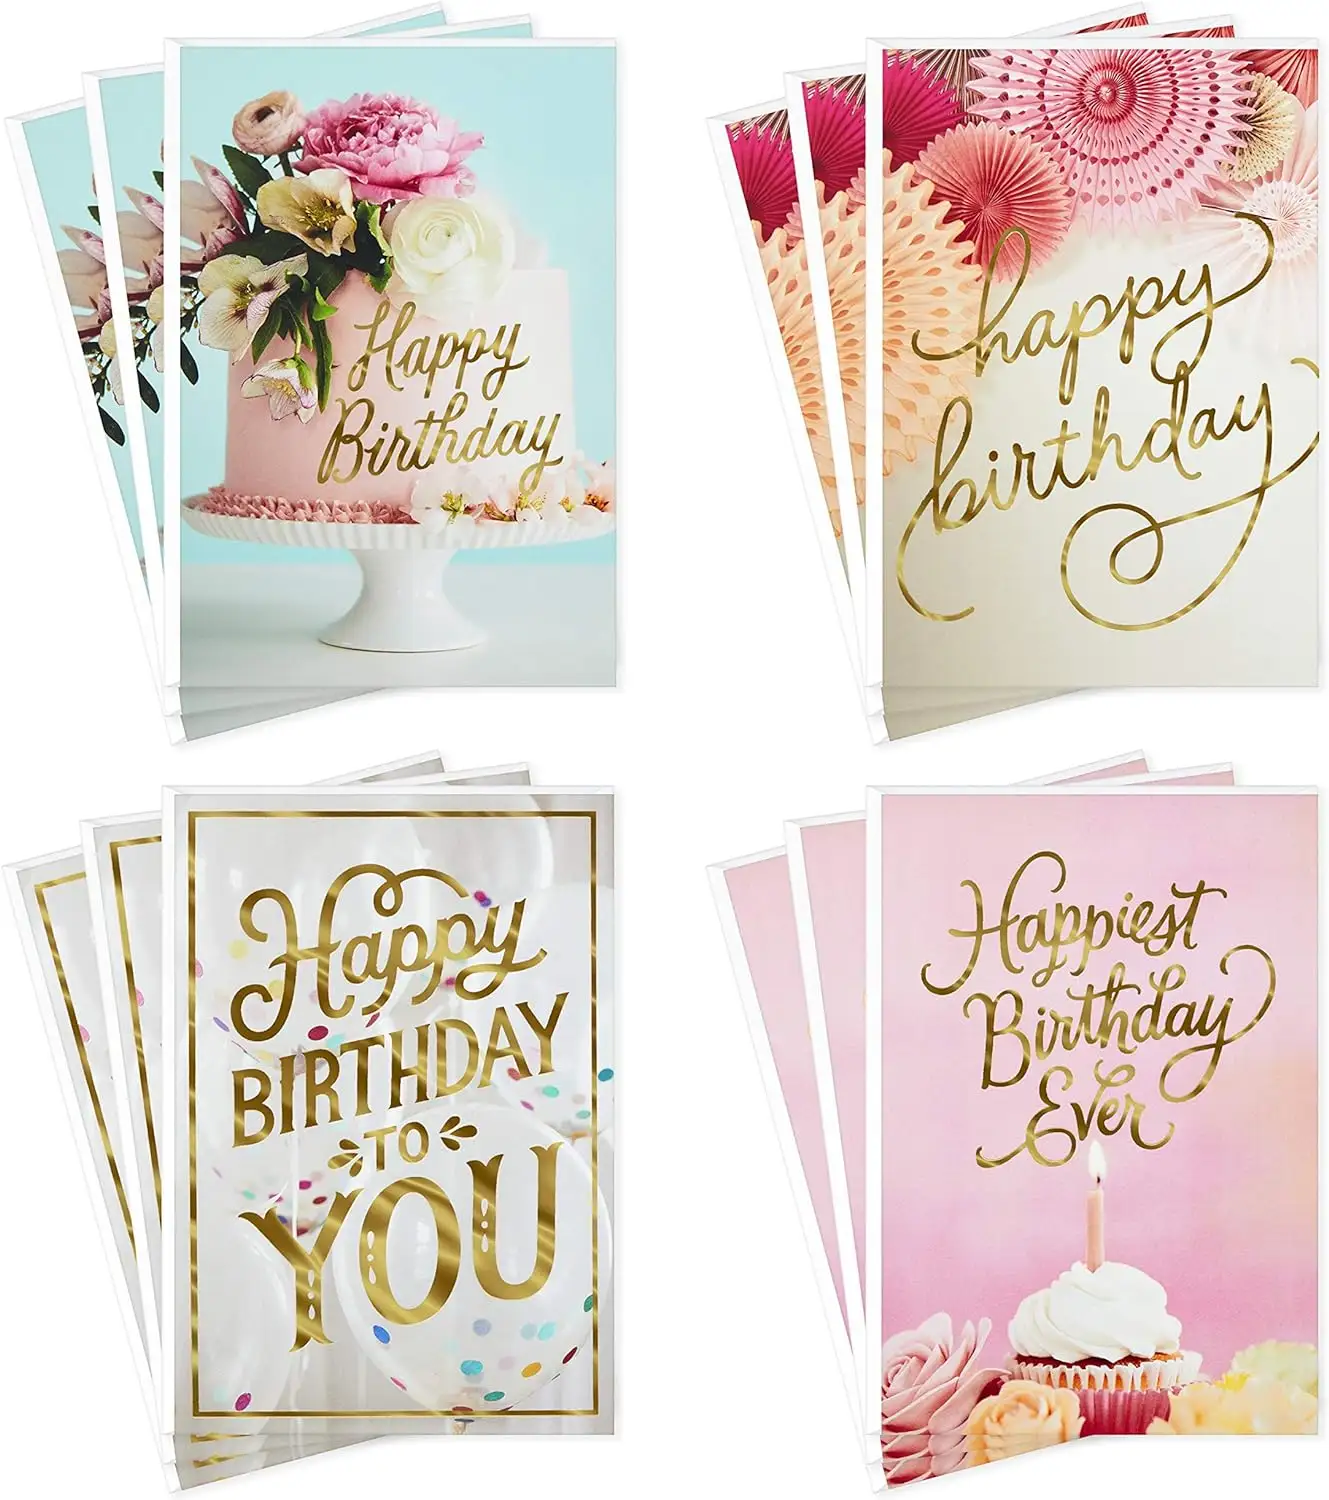 Carte de remerciement personnalisée Enveloppe Cartes de vœux Cartes d'anniversaire Impression avec enveloppes